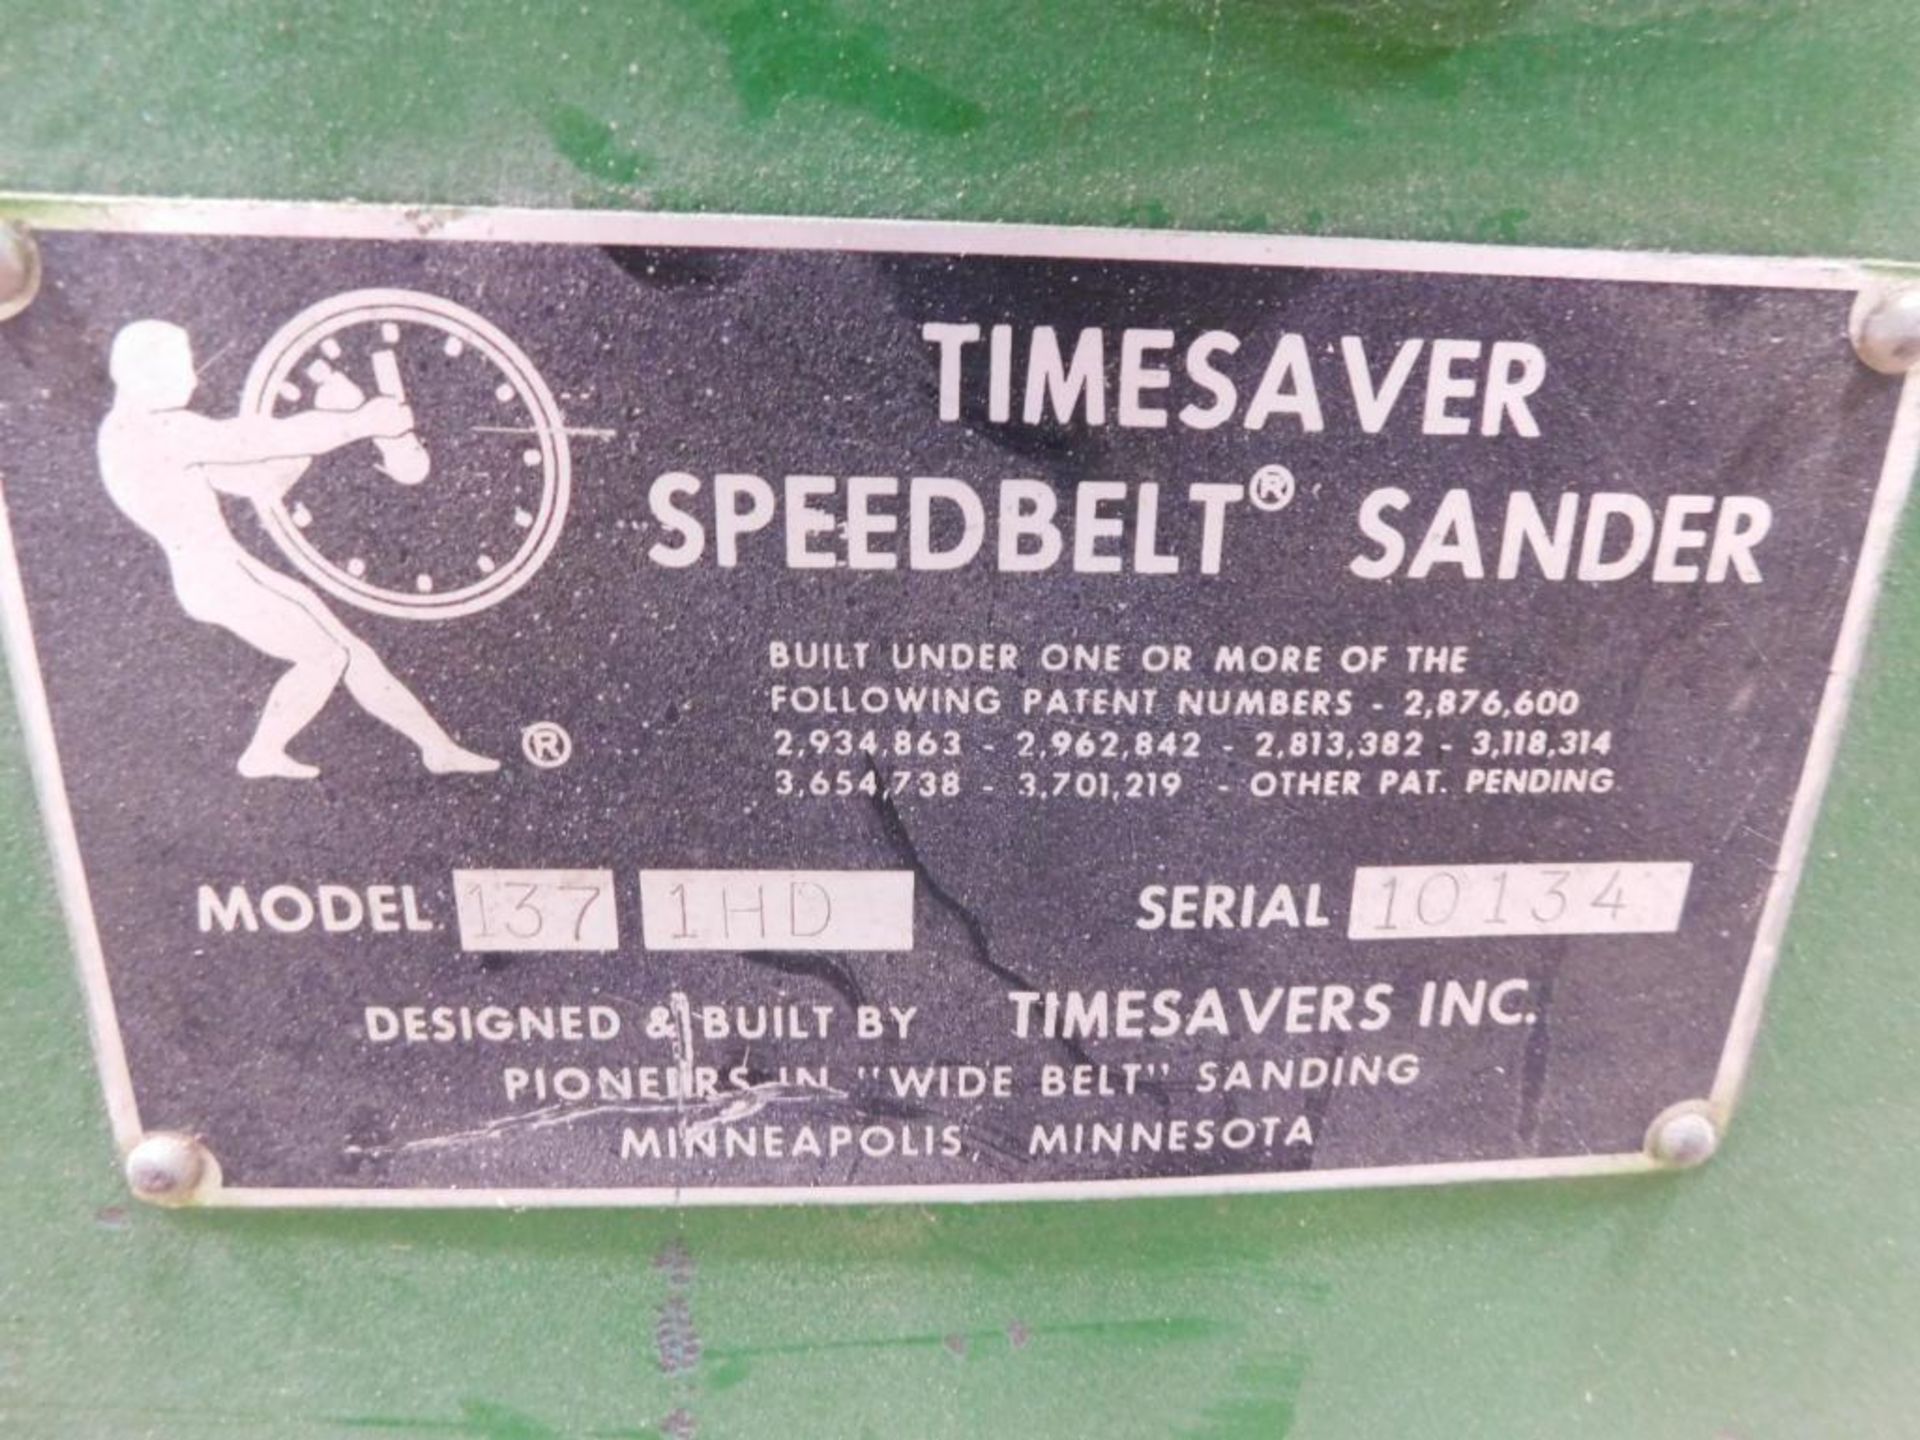 Timesaver Speed Belt Sander, Model 137-1HD, S/N 10134, 37" Belt - Image 8 of 8